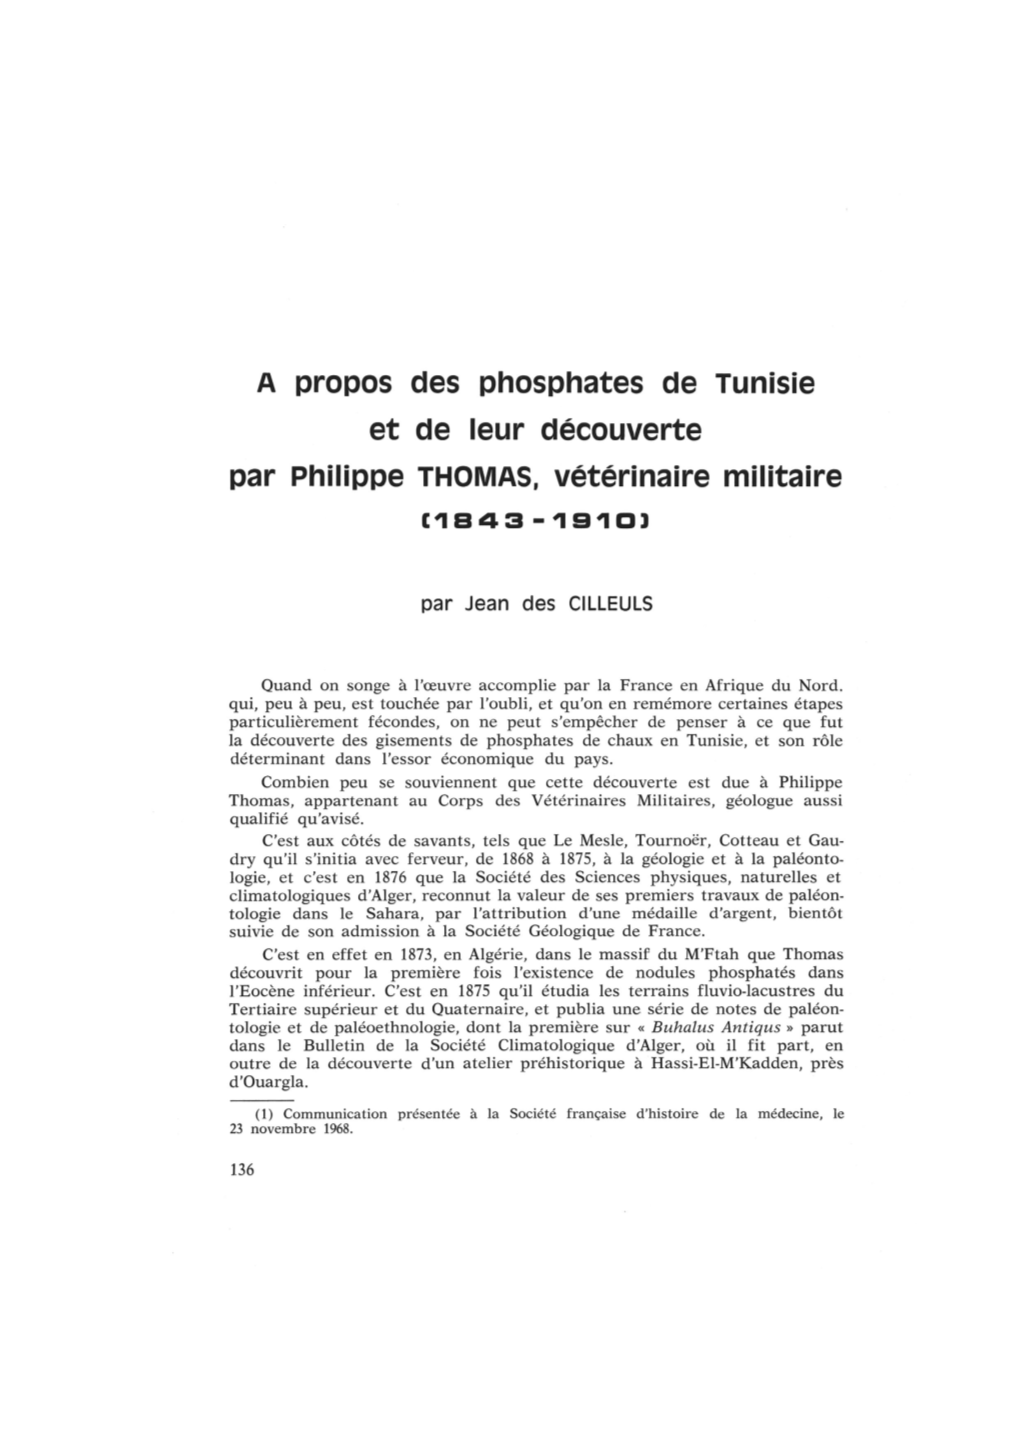 A Propos Des Phosphates De Tunisie Et De Leur Découverte Par Philippe THOMAS, Vétérinaire Militaire I1843-1910)